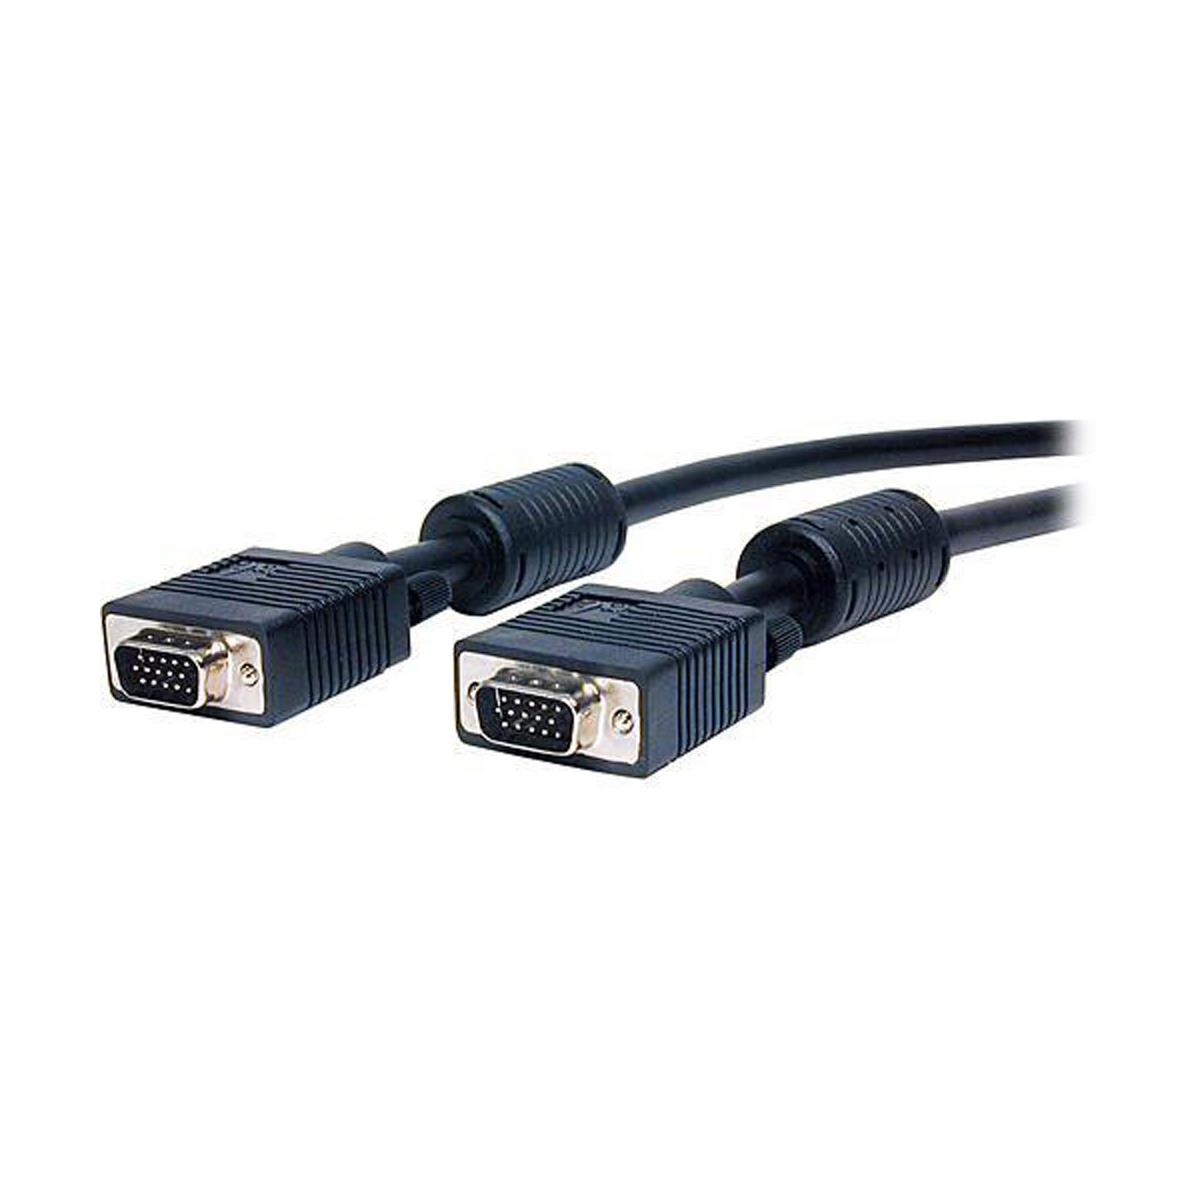 Image of Comprehensive 3' Standard Series HD15 Plug to Plug Cable